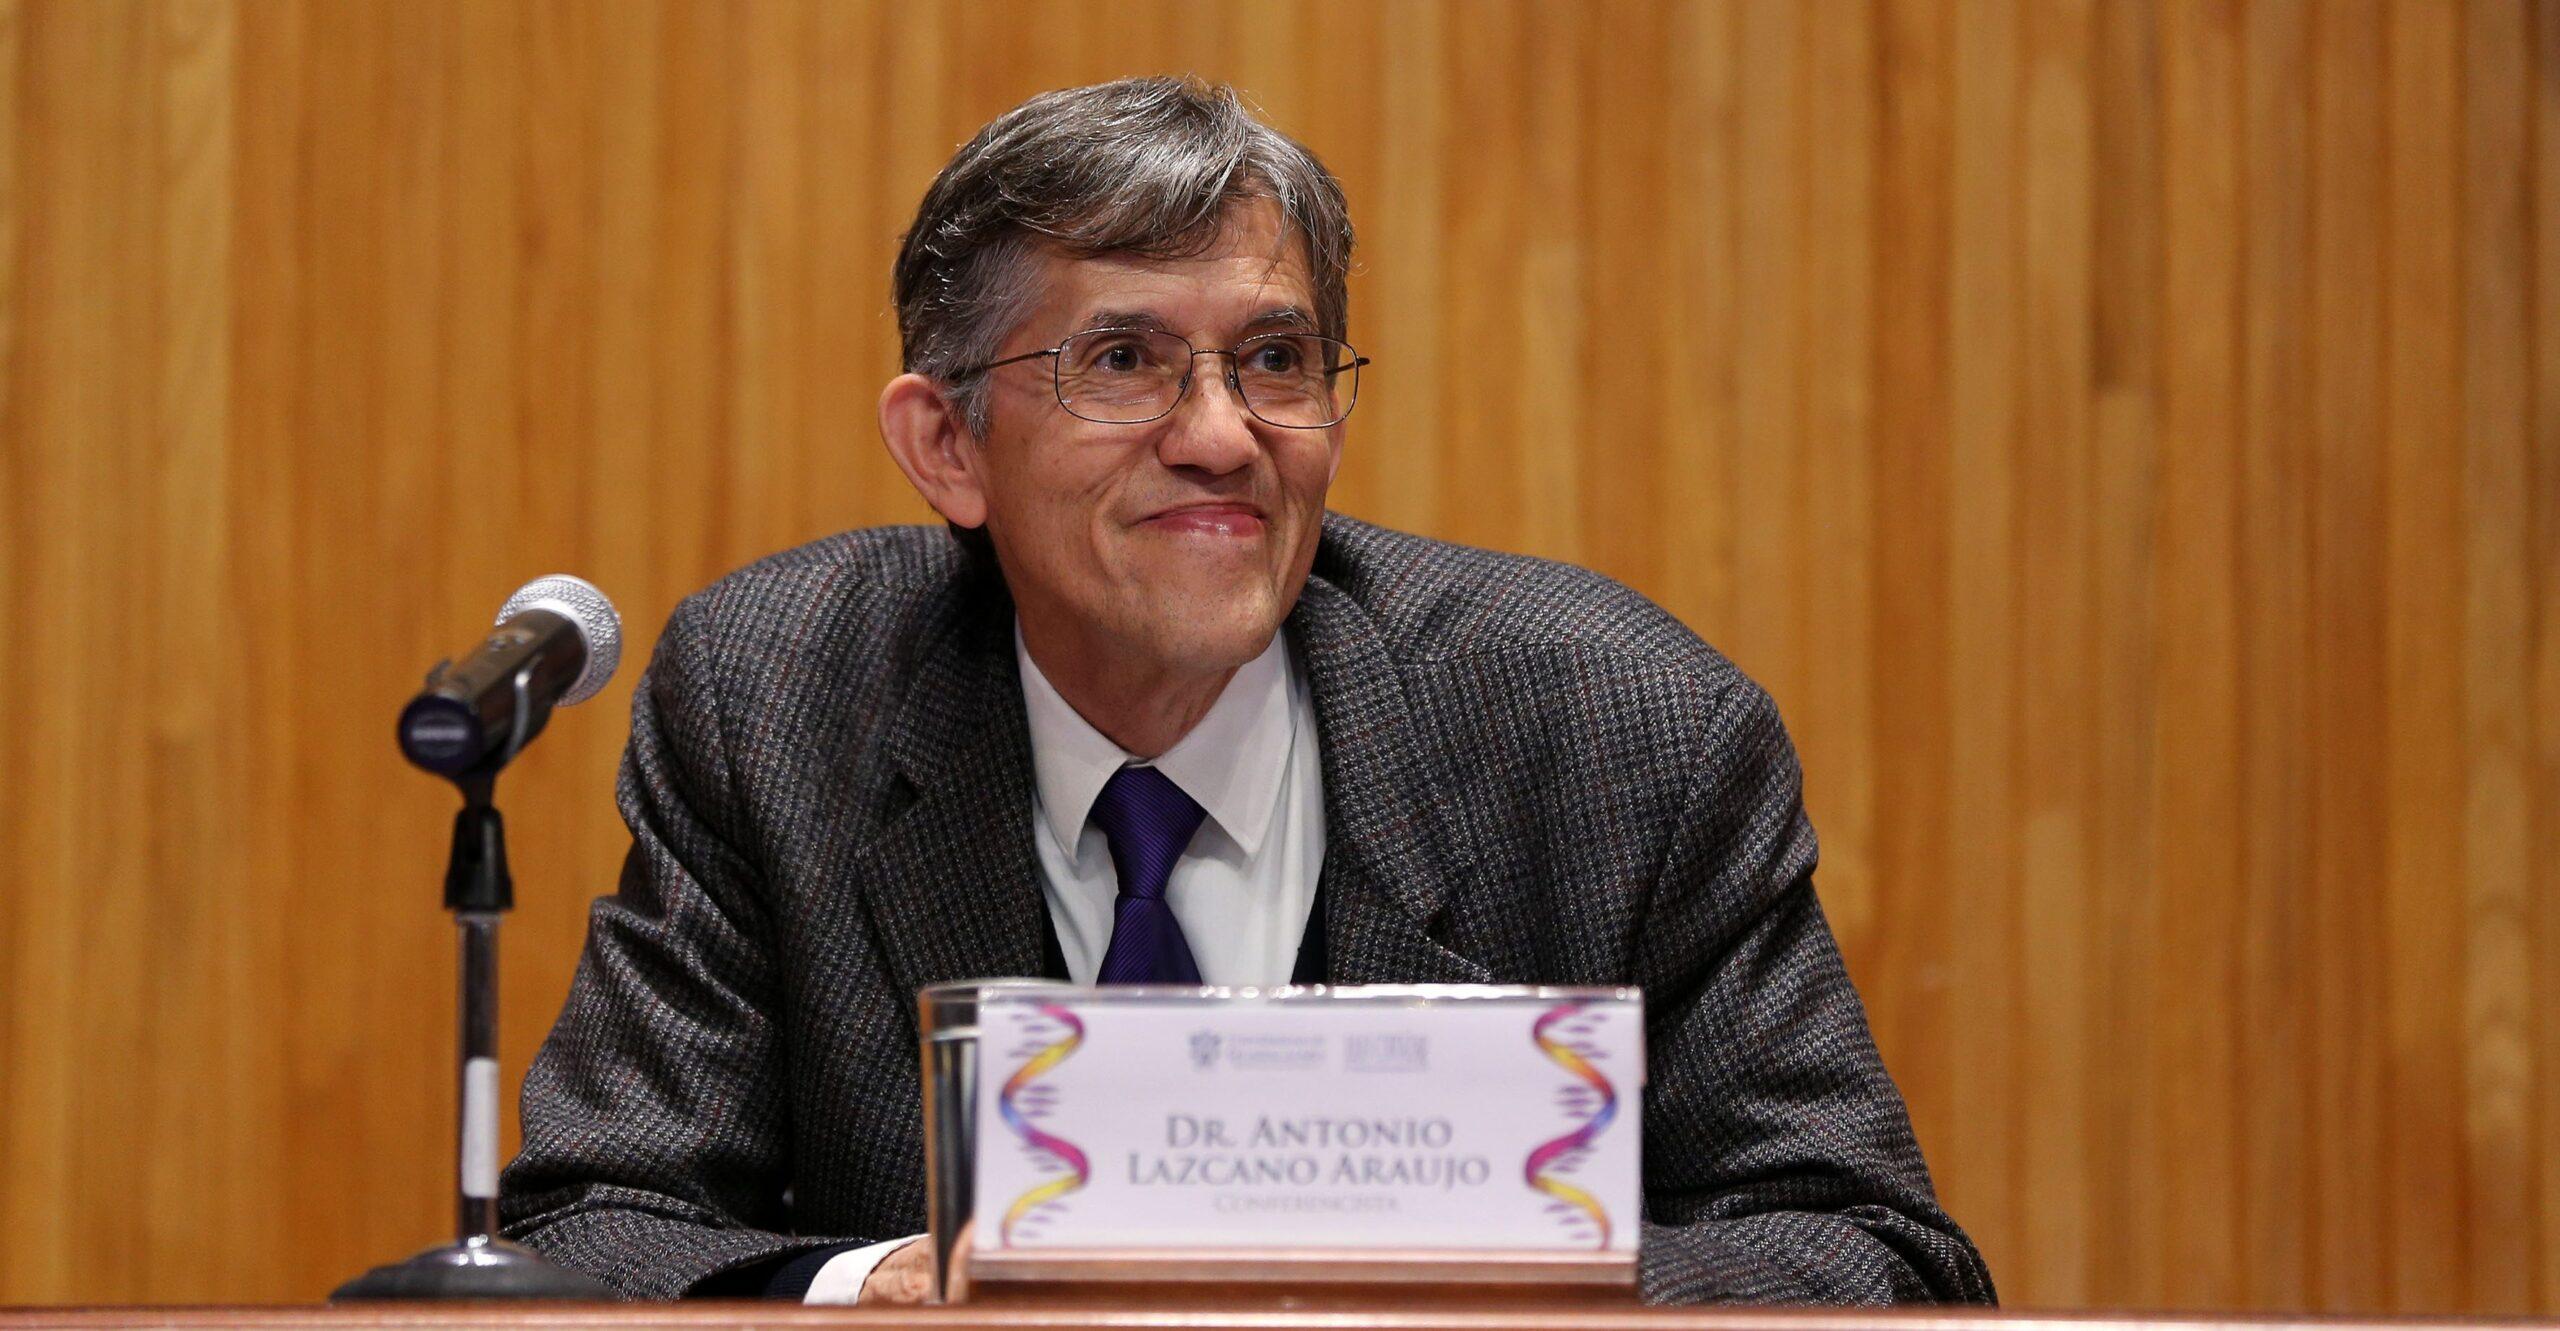 Integrantes de Comisión Dictaminadora de Conacyt piden restitución del científico Antonio Lazcano